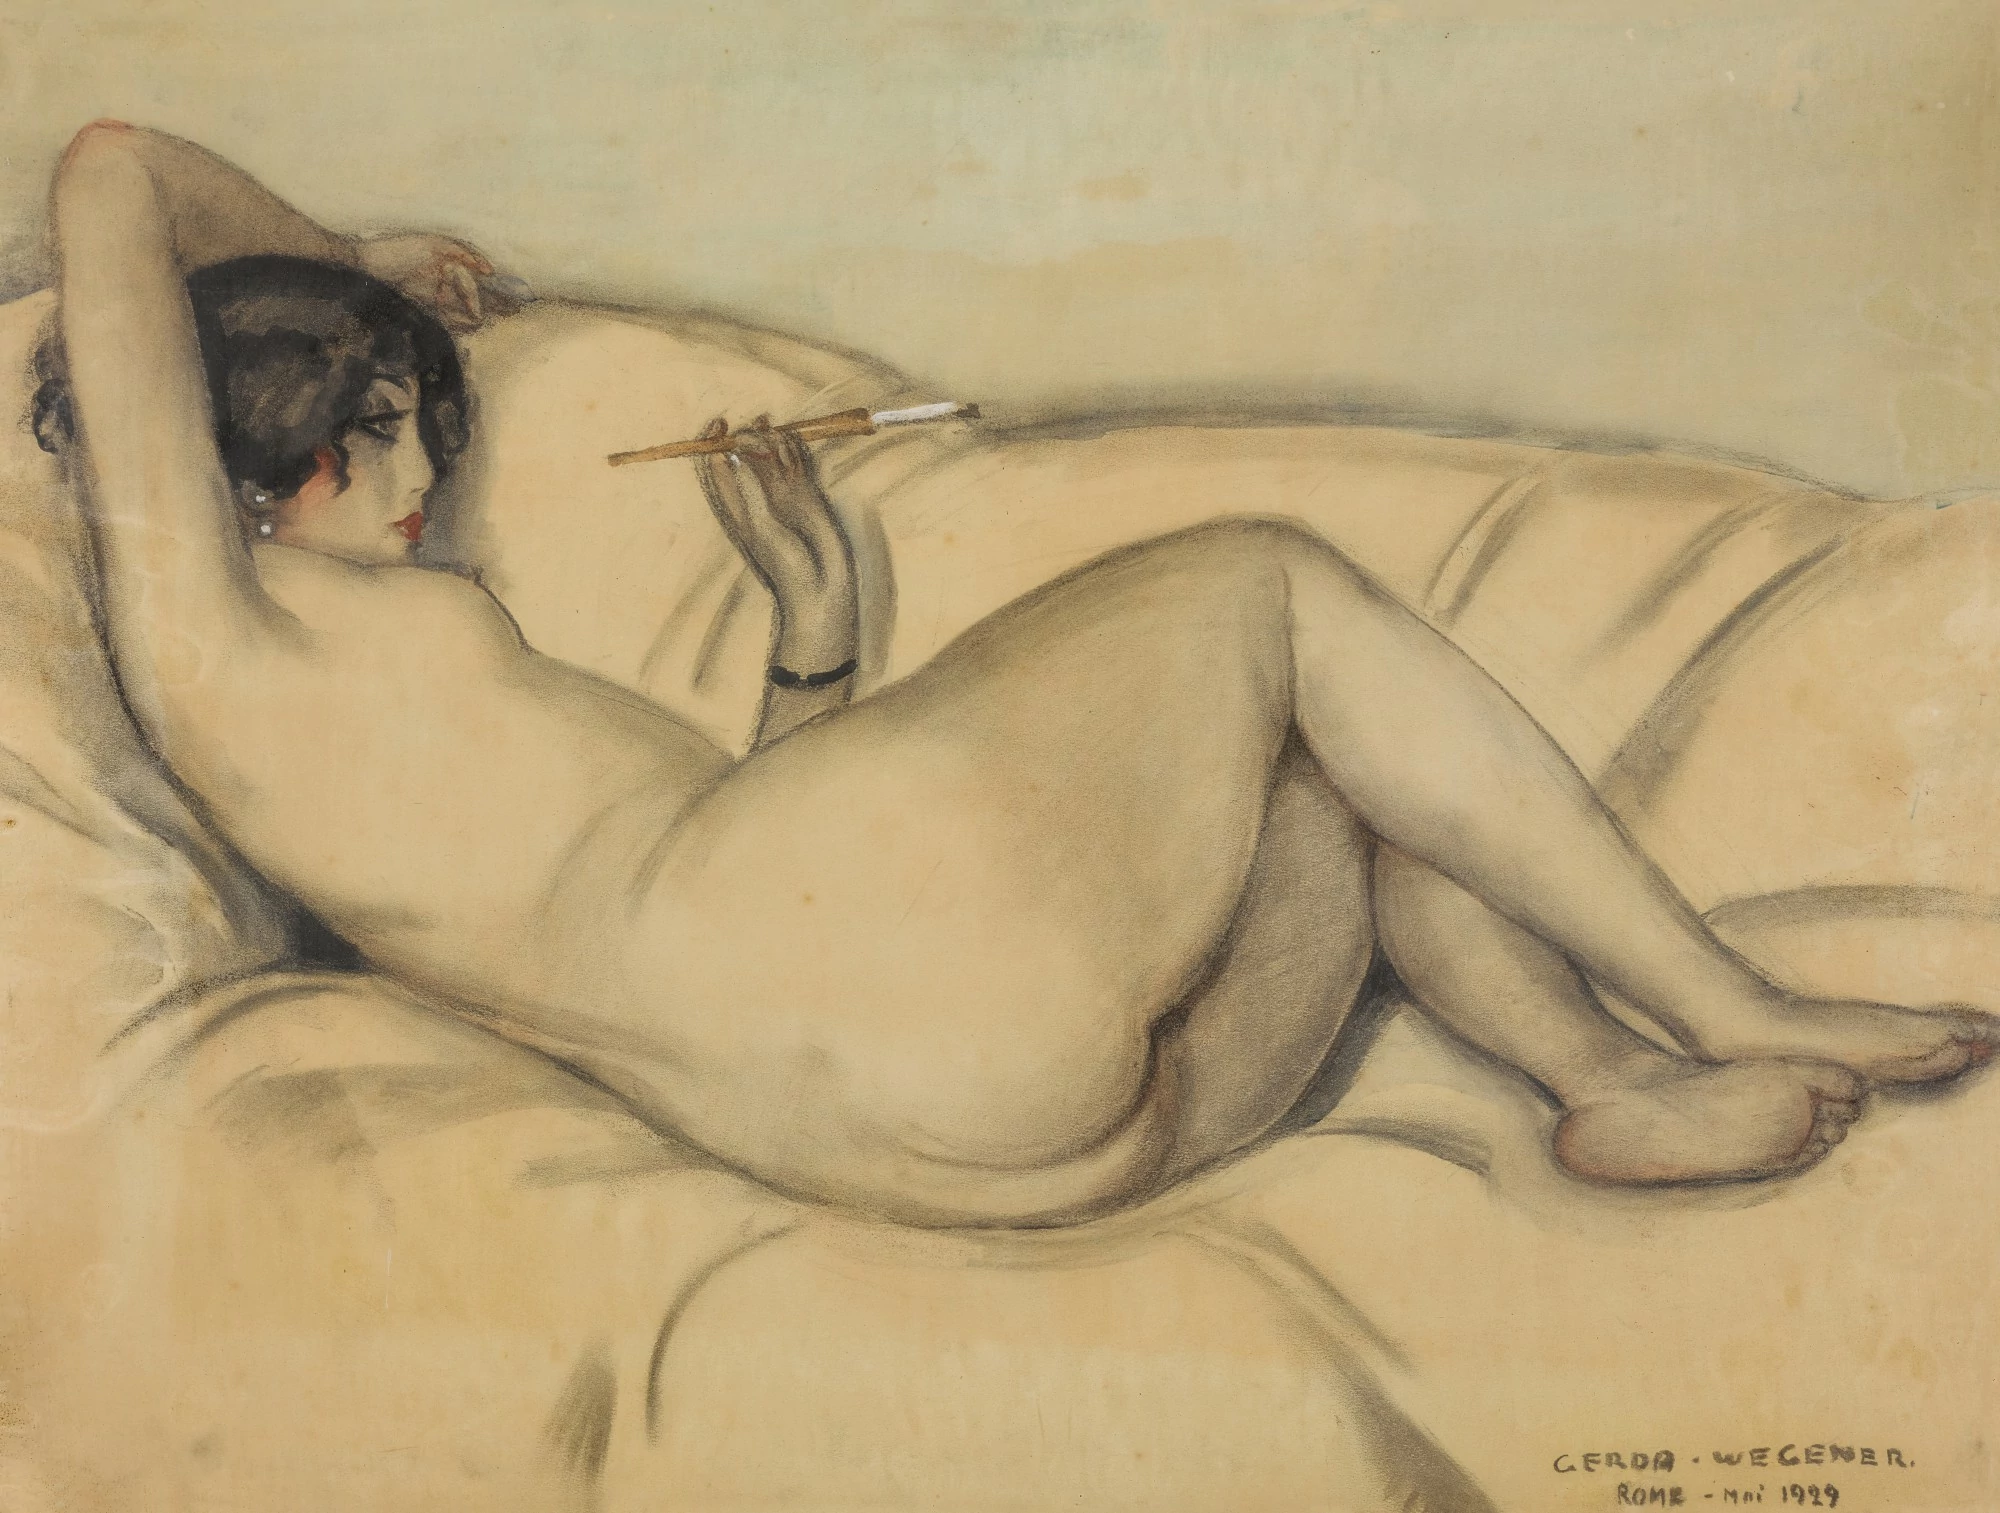 Reclining nude, Gerda Wegener